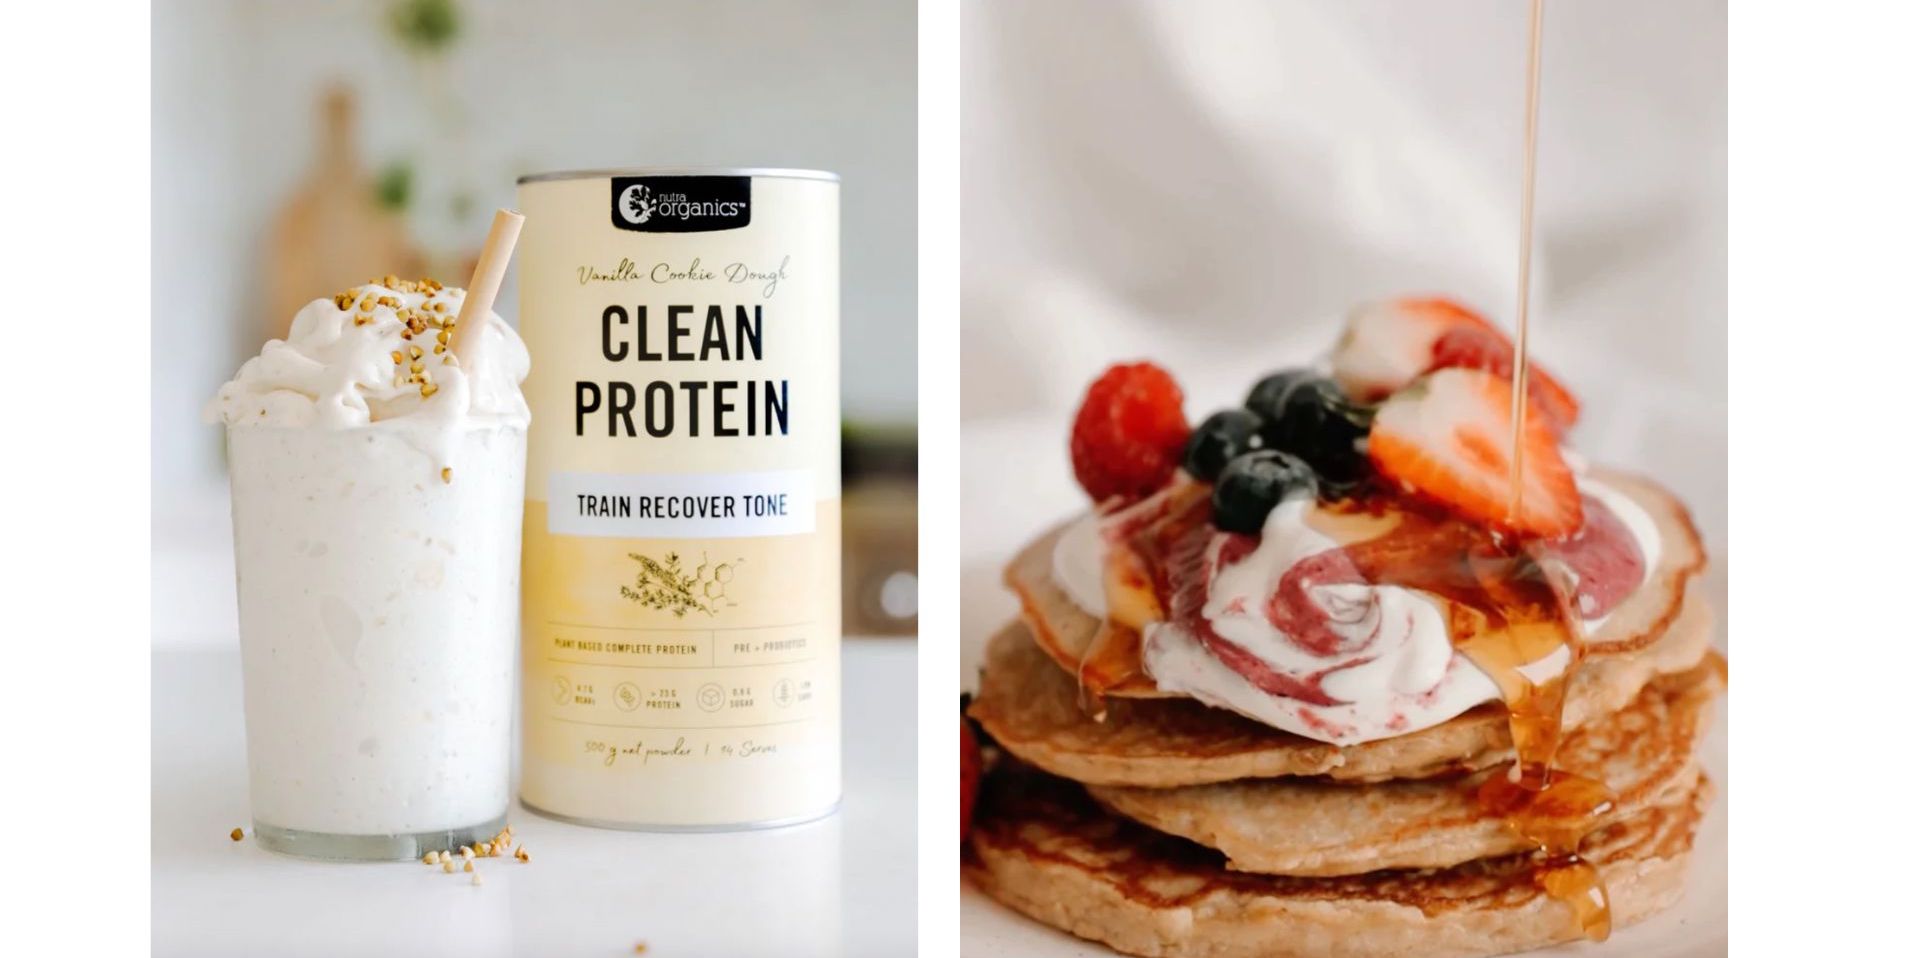 Clean Protein powder & protein powder recipes - pancakes